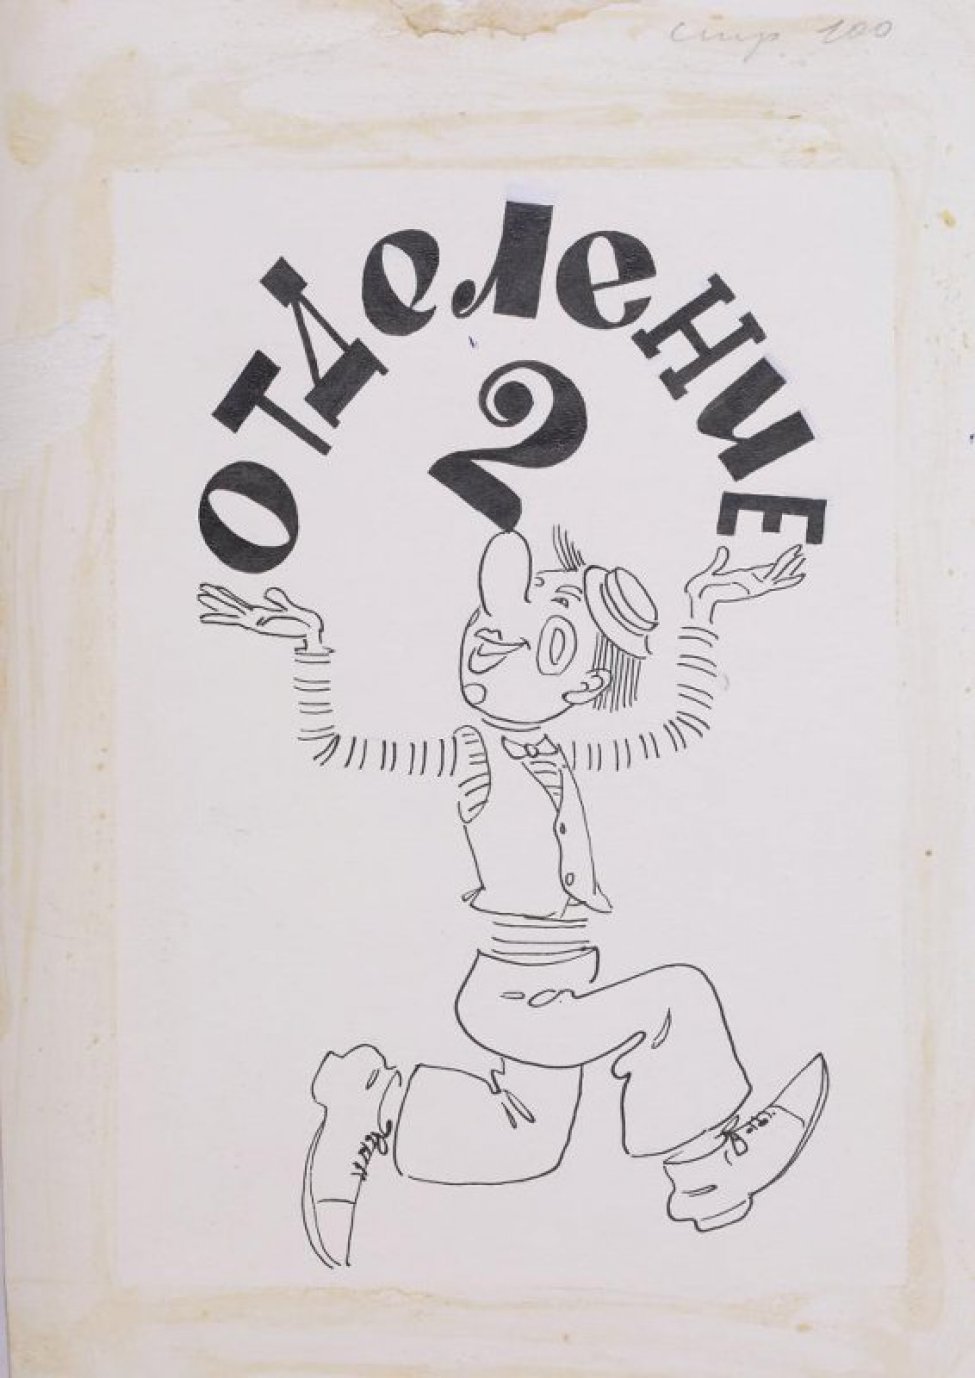 Изображен в рост в 3/4 повороте бегущий клоун с поднятыми вверх руками; над ним полукругом черной тушью печатным шрифтом: Отделение 2.